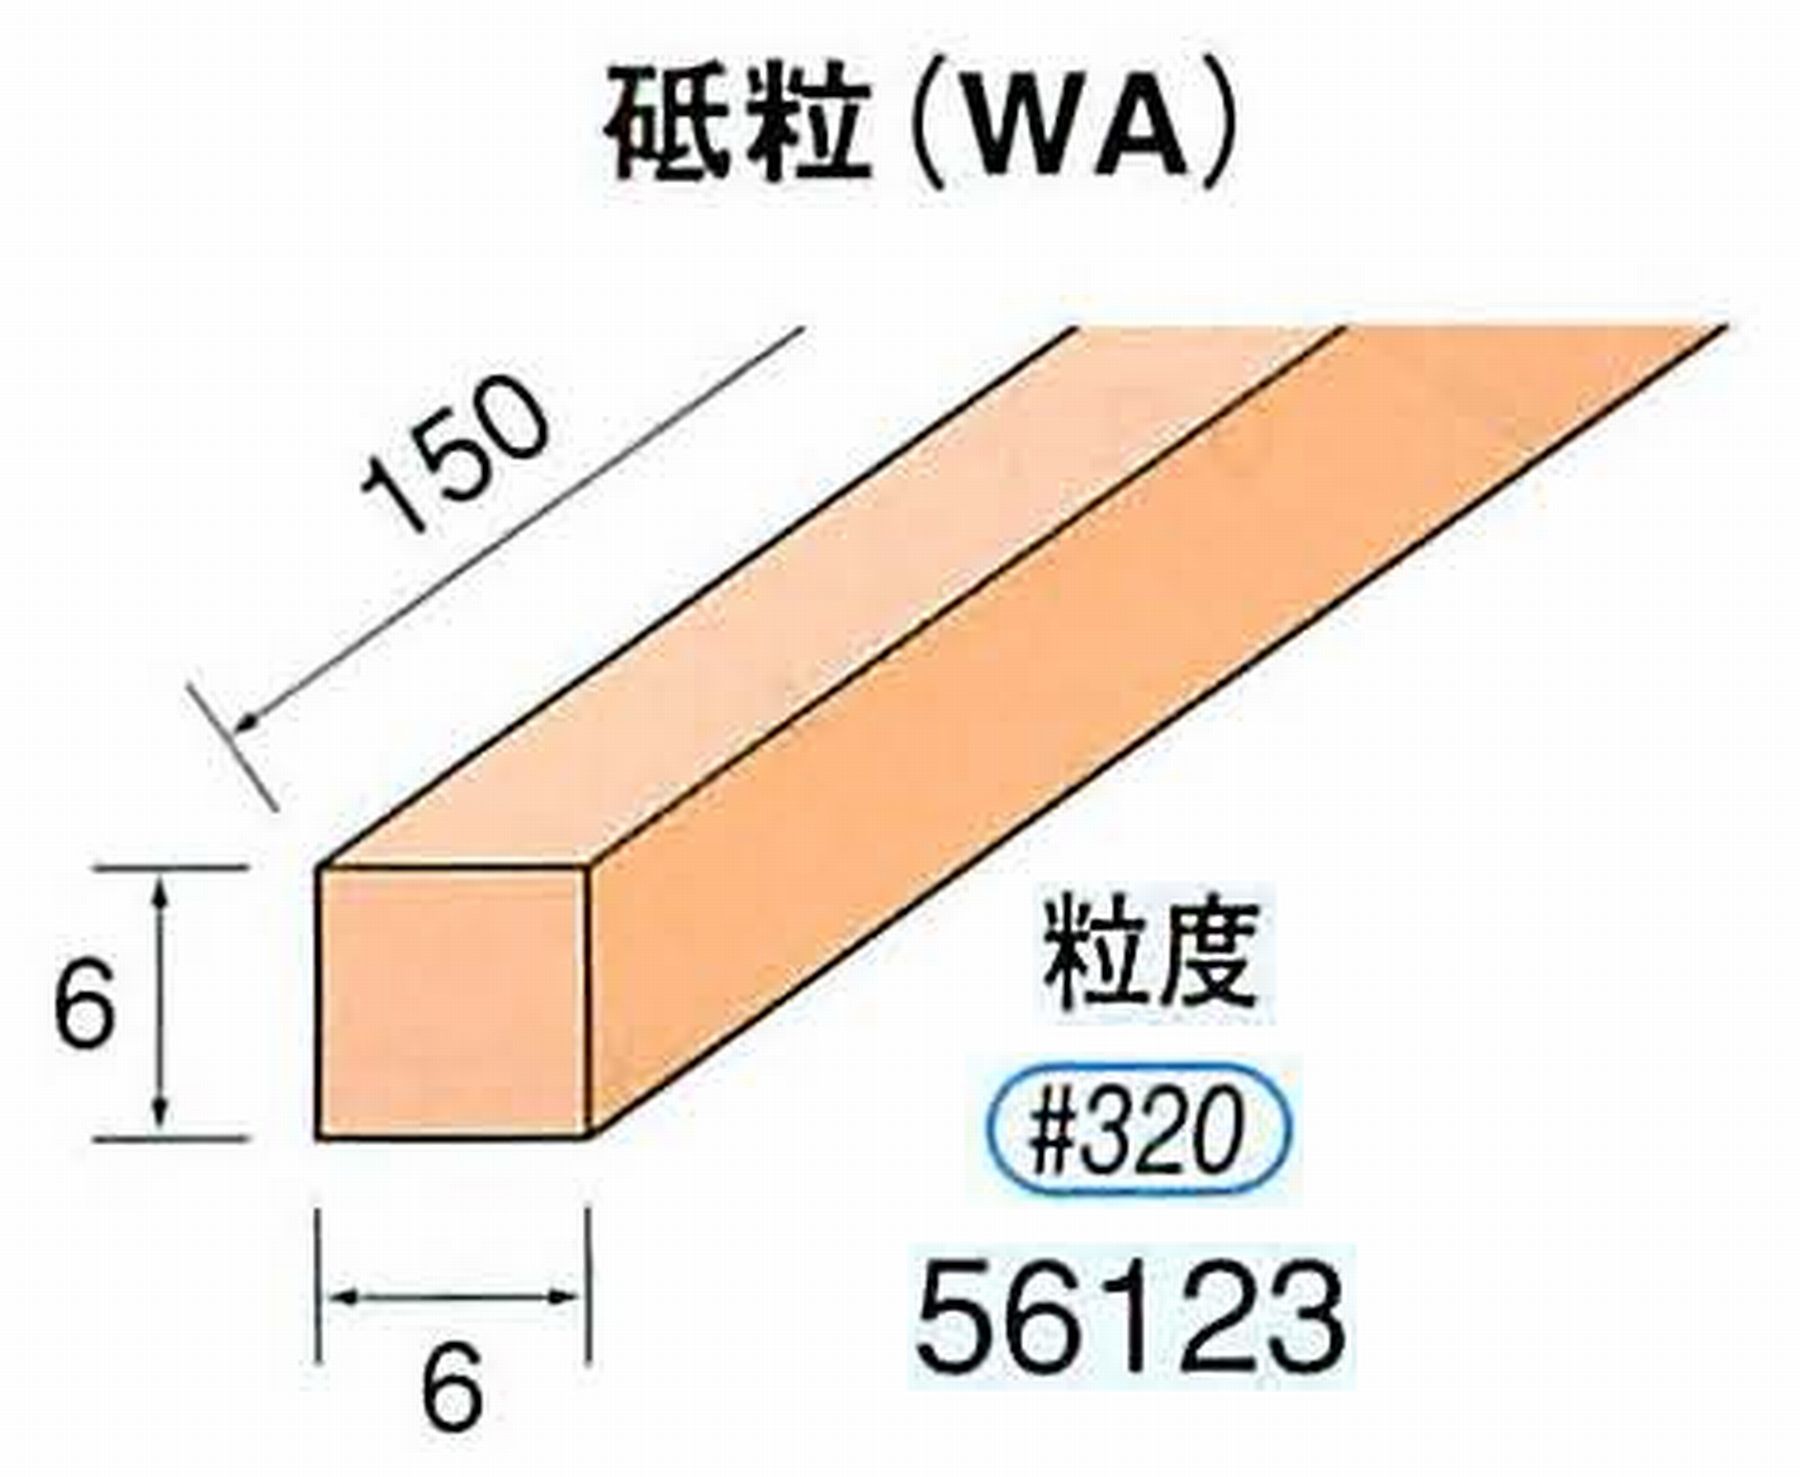 ナカニシ/NAKANISHI スティック砥石 スタンダードシリーズ 砥粒(WA) 56123